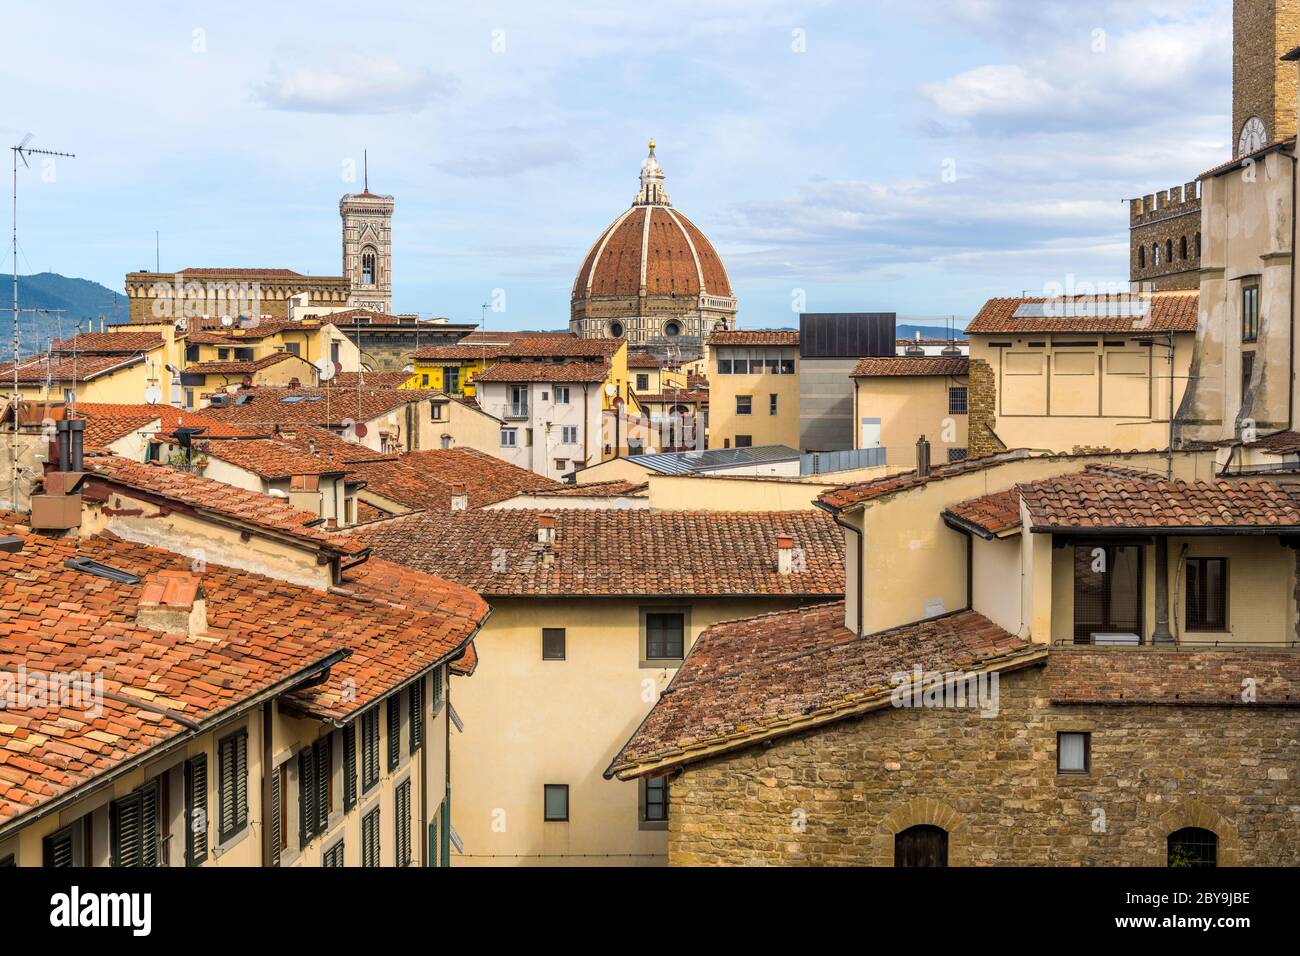 Altstadt - Blick auf die Altstadt von Florenz auf dem Dach, mit Giottos Campanile und Brunelleschi's Dom von Florenz im Zentrum. Florenz, Italien. Stockfoto